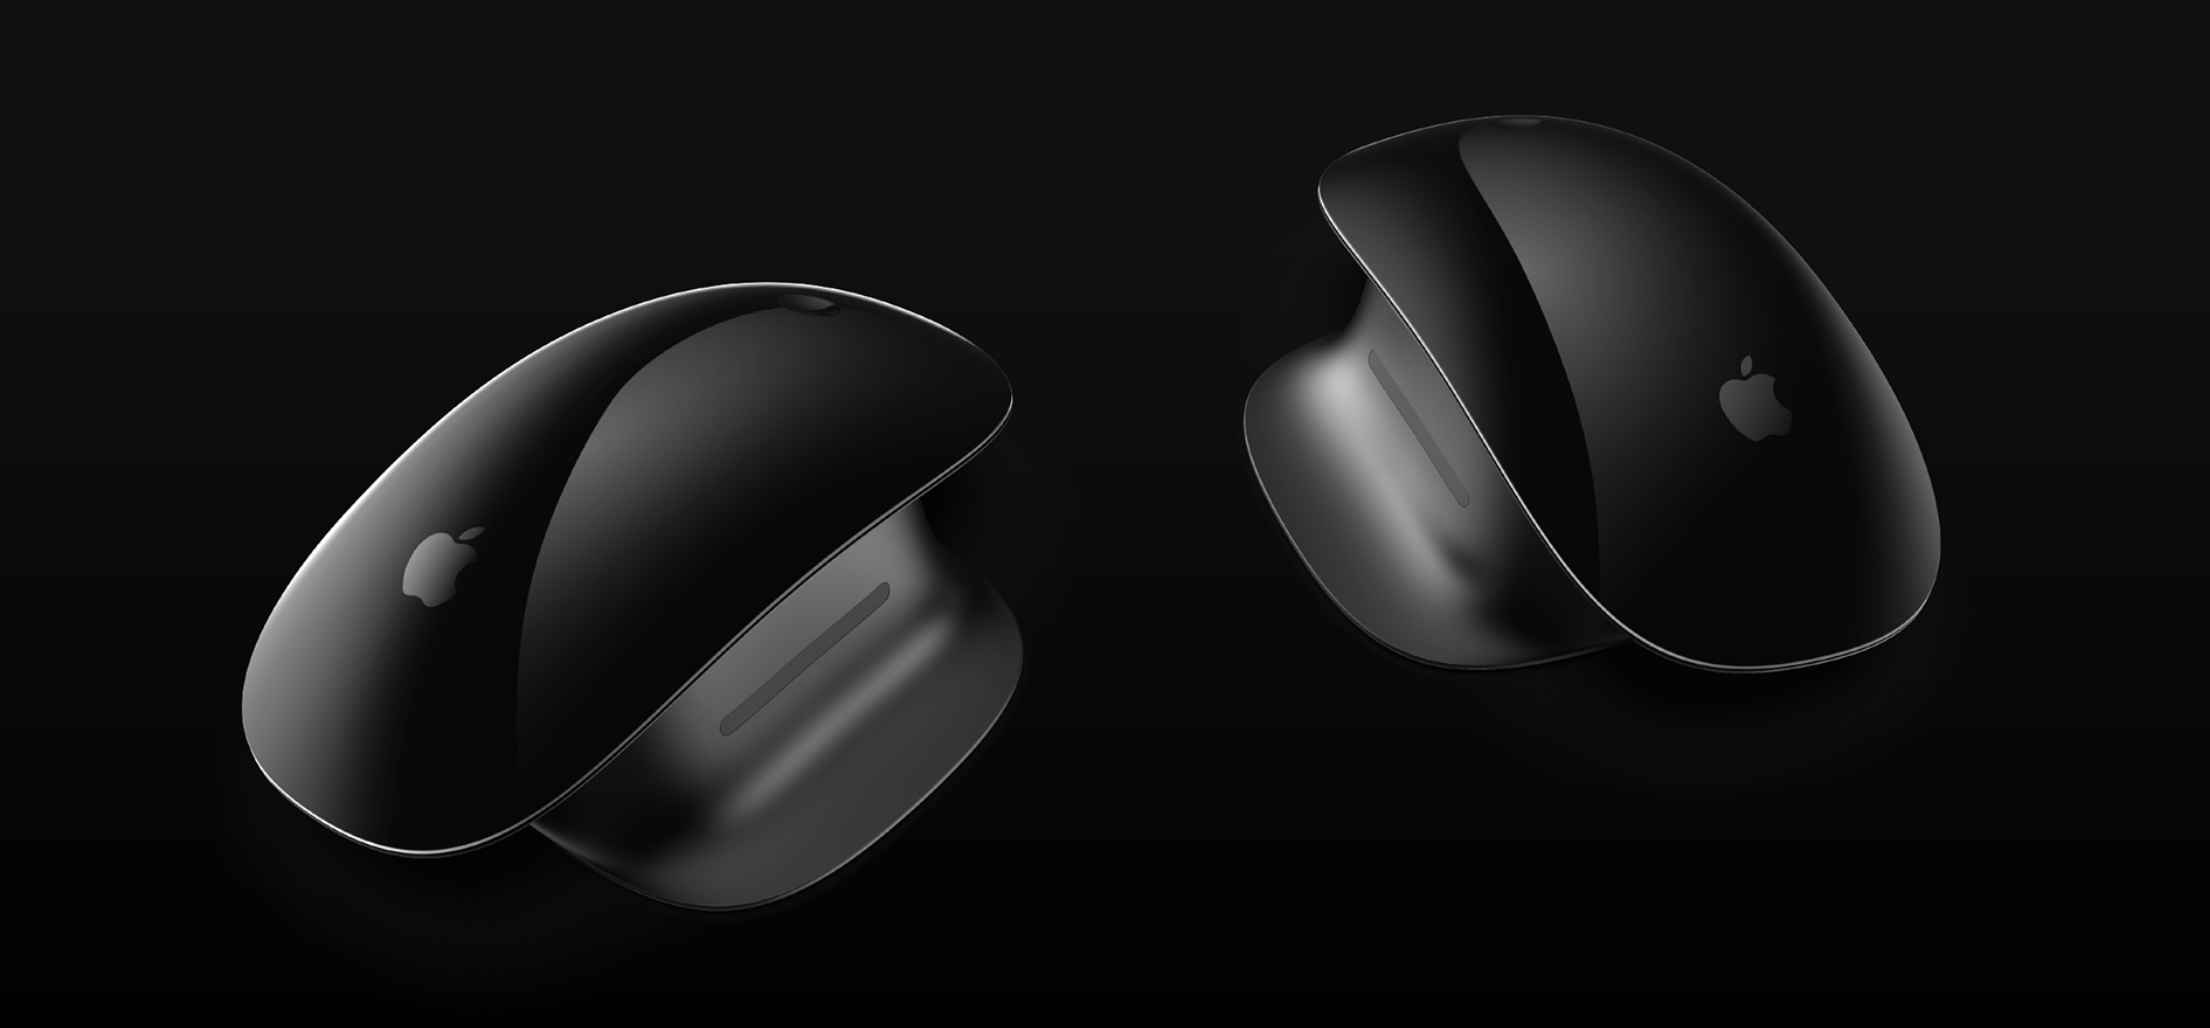 Apple Pro Mouse concept – reversible design